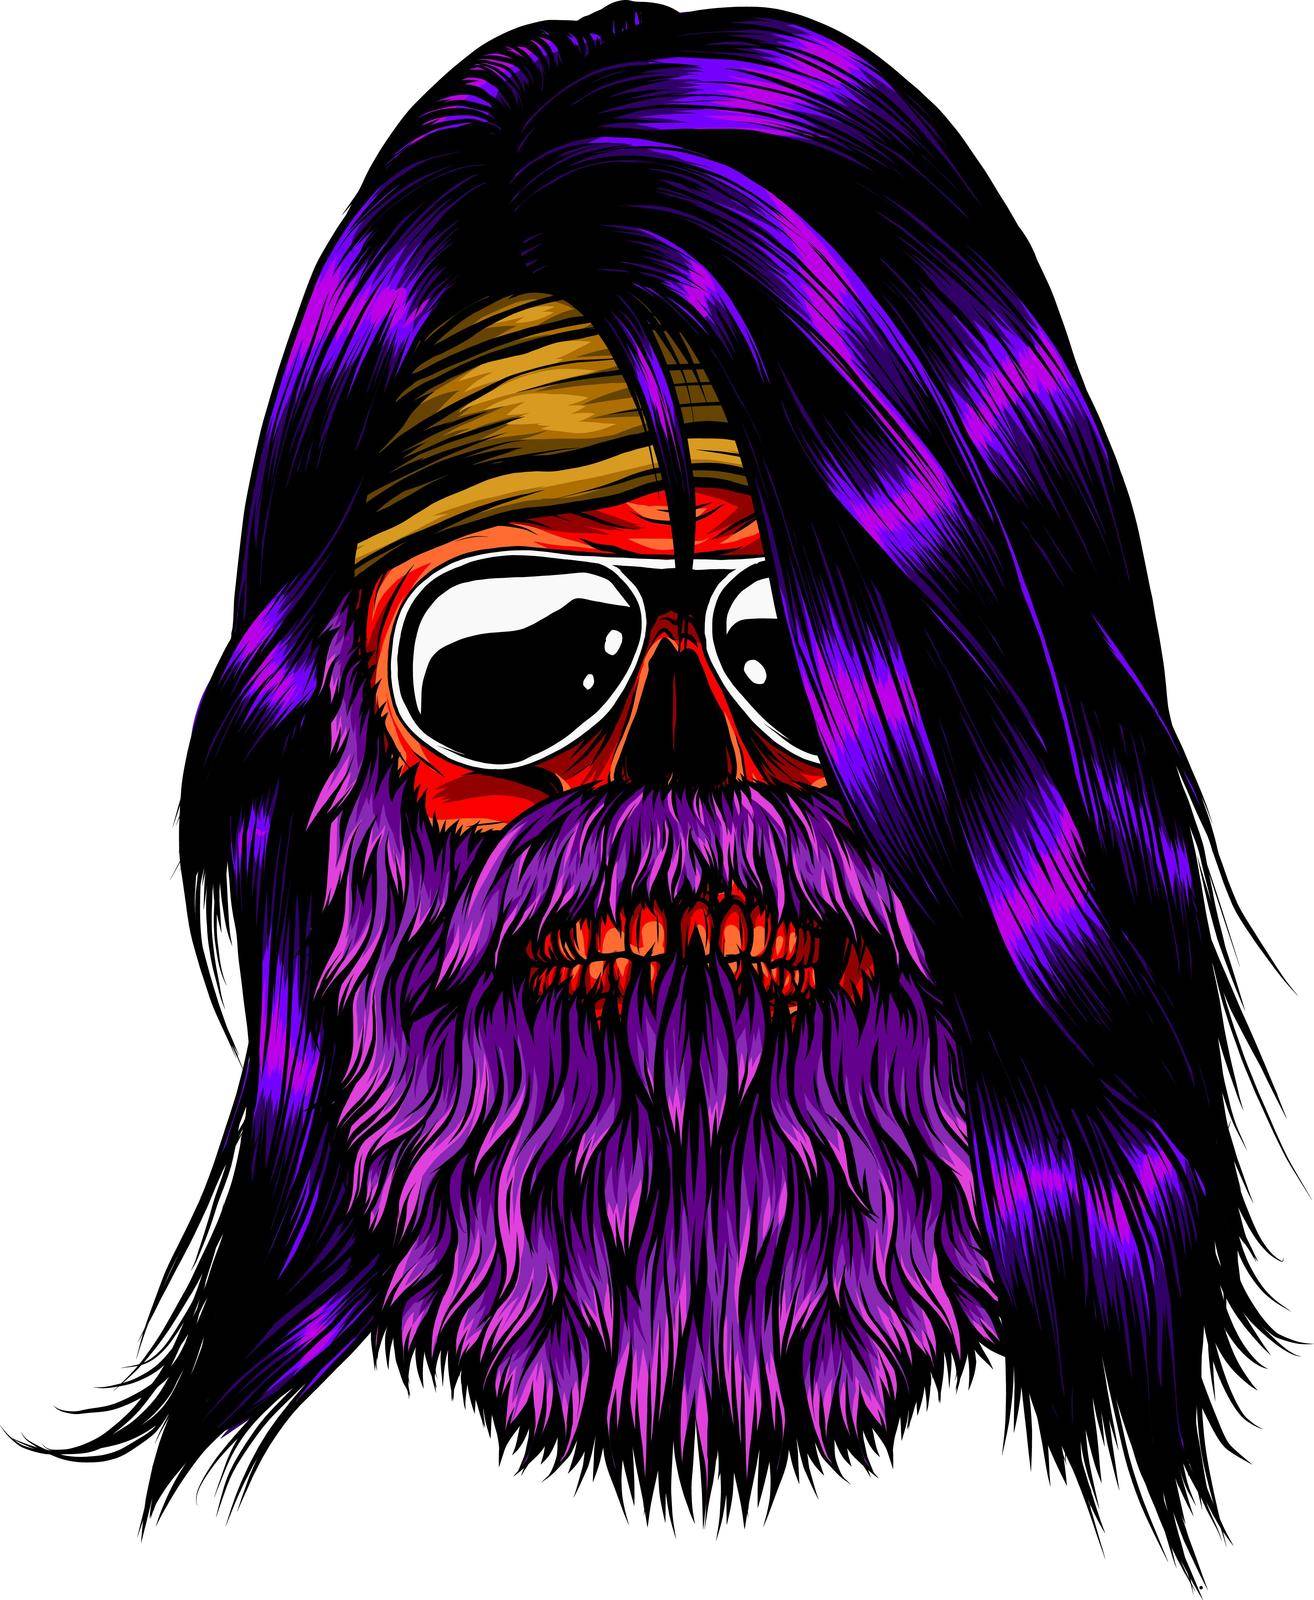 Bearded skull vector illustration design